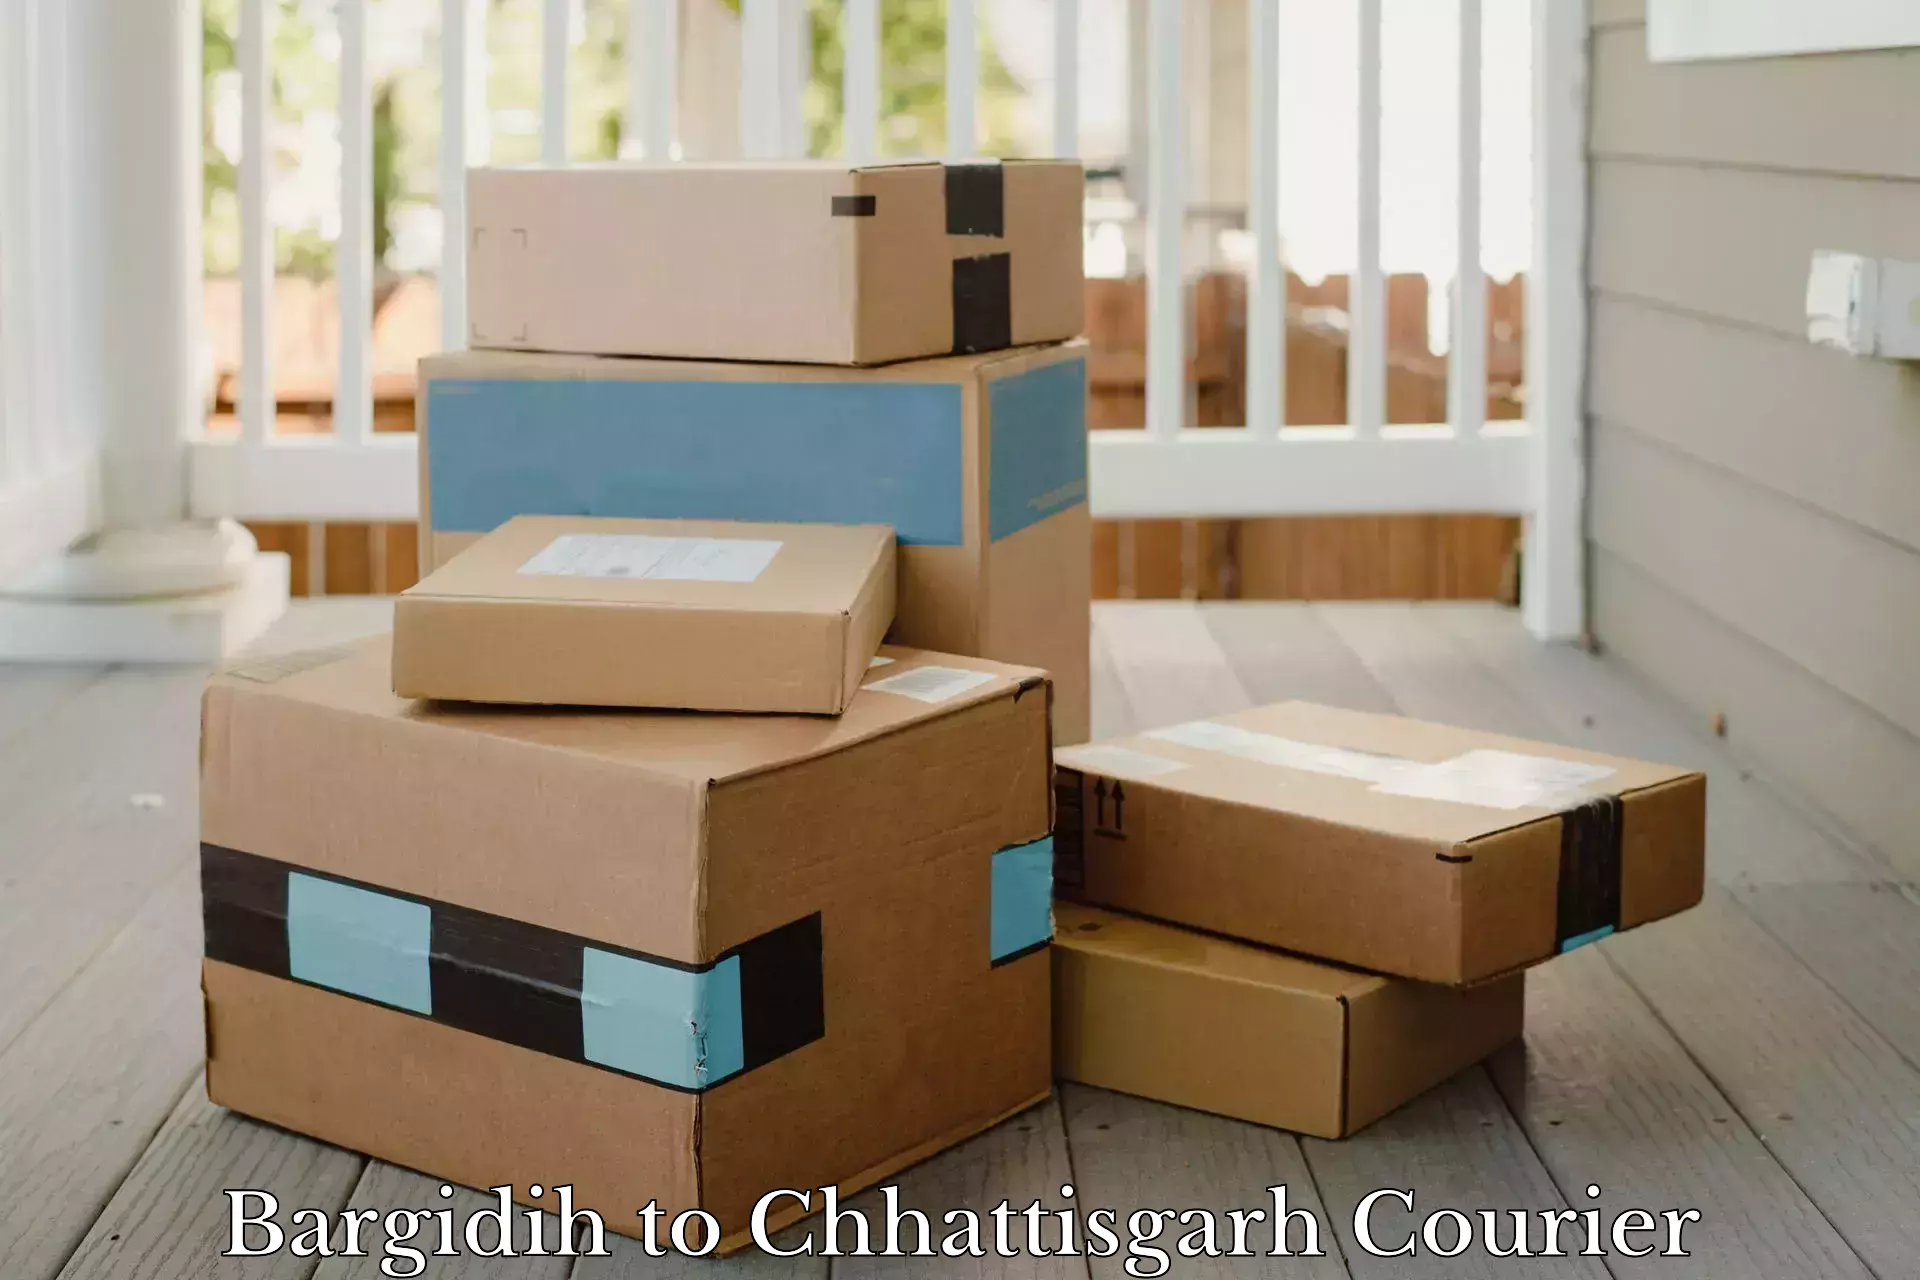 Next-generation courier services Bargidih to Bijapur Chhattisgarh